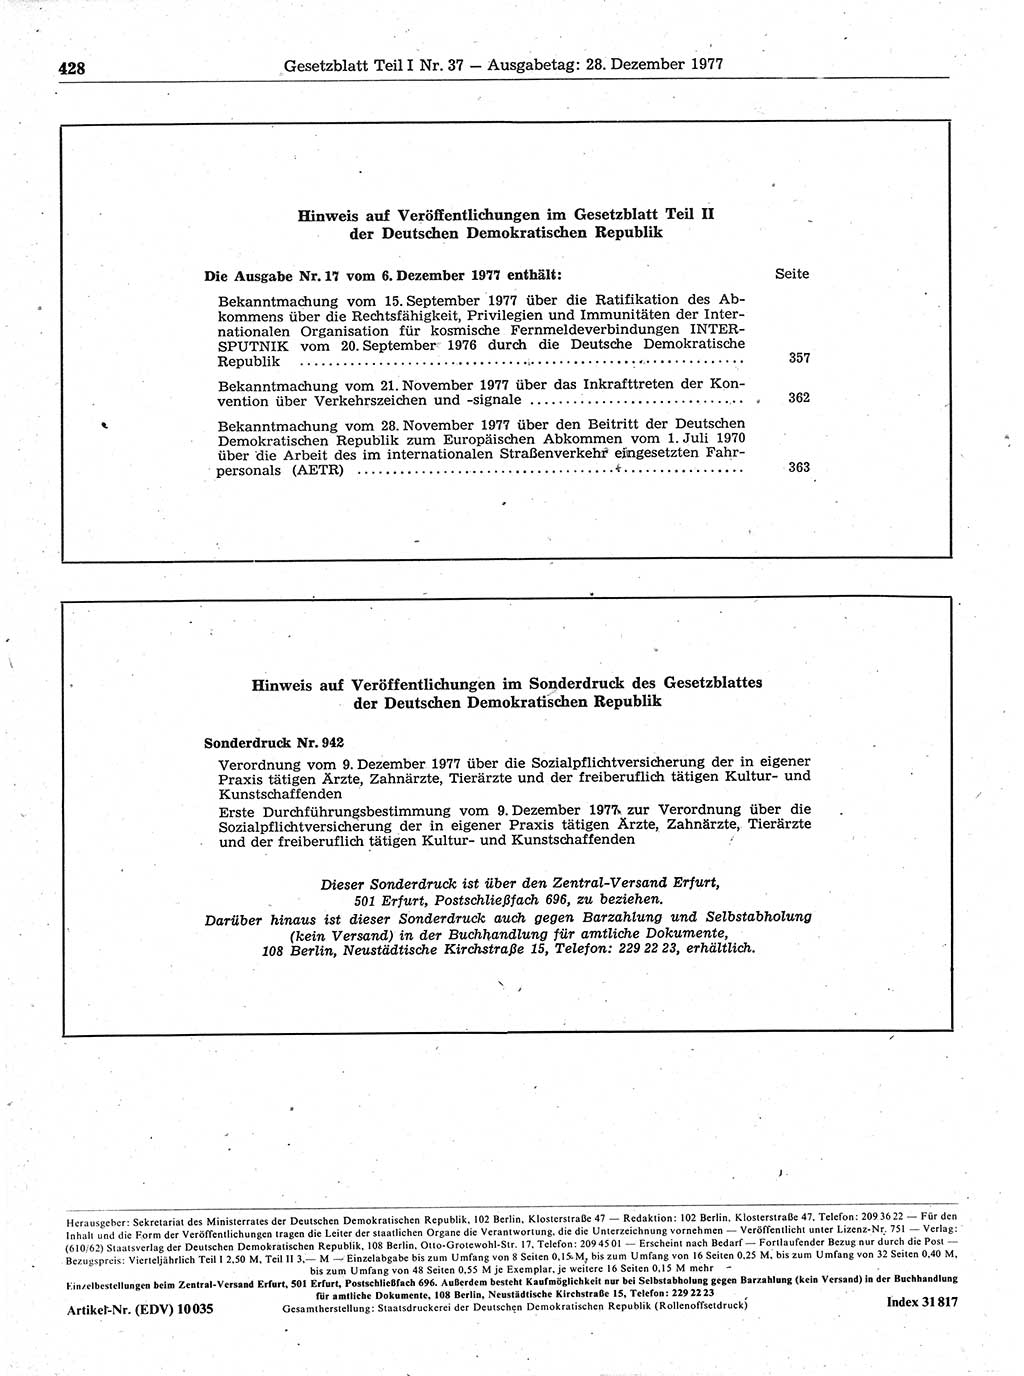 Gesetzblatt (GBl.) der Deutschen Demokratischen Republik (DDR) Teil Ⅰ 1977, Seite 428 (GBl. DDR Ⅰ 1977, S. 428)